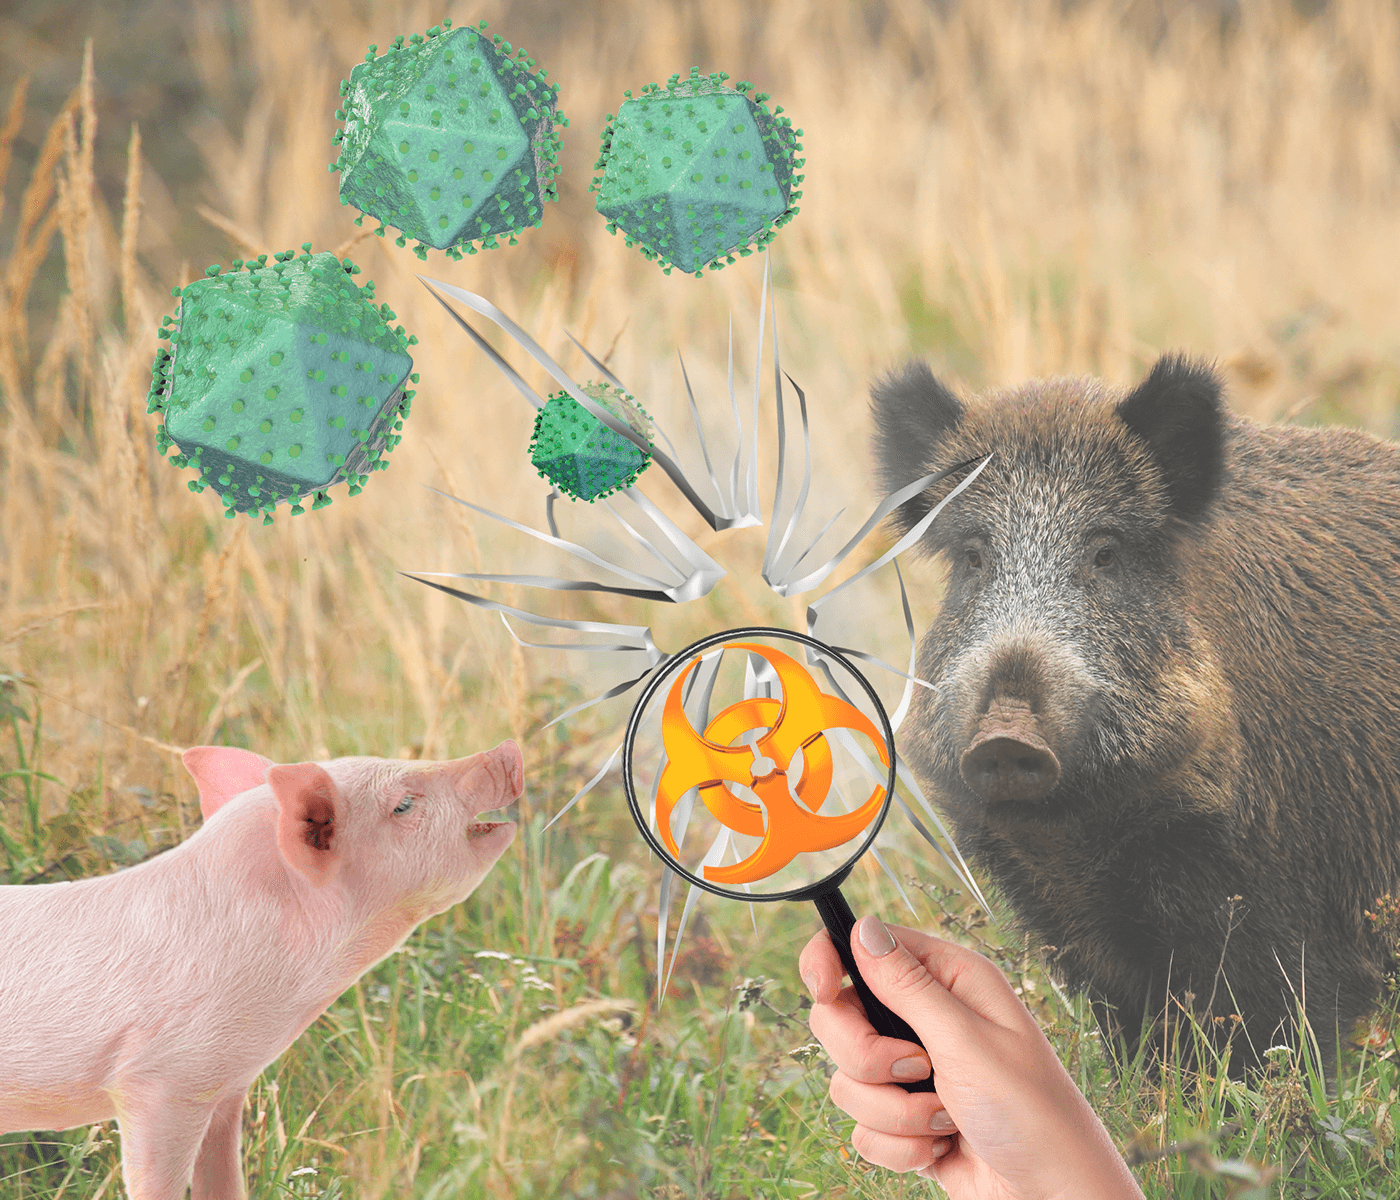 Prevención de la Peste Porcina Africana – Evaluación de la bioseguridad externa frente a fauna silvestre en explotaciones porcinas intensivas